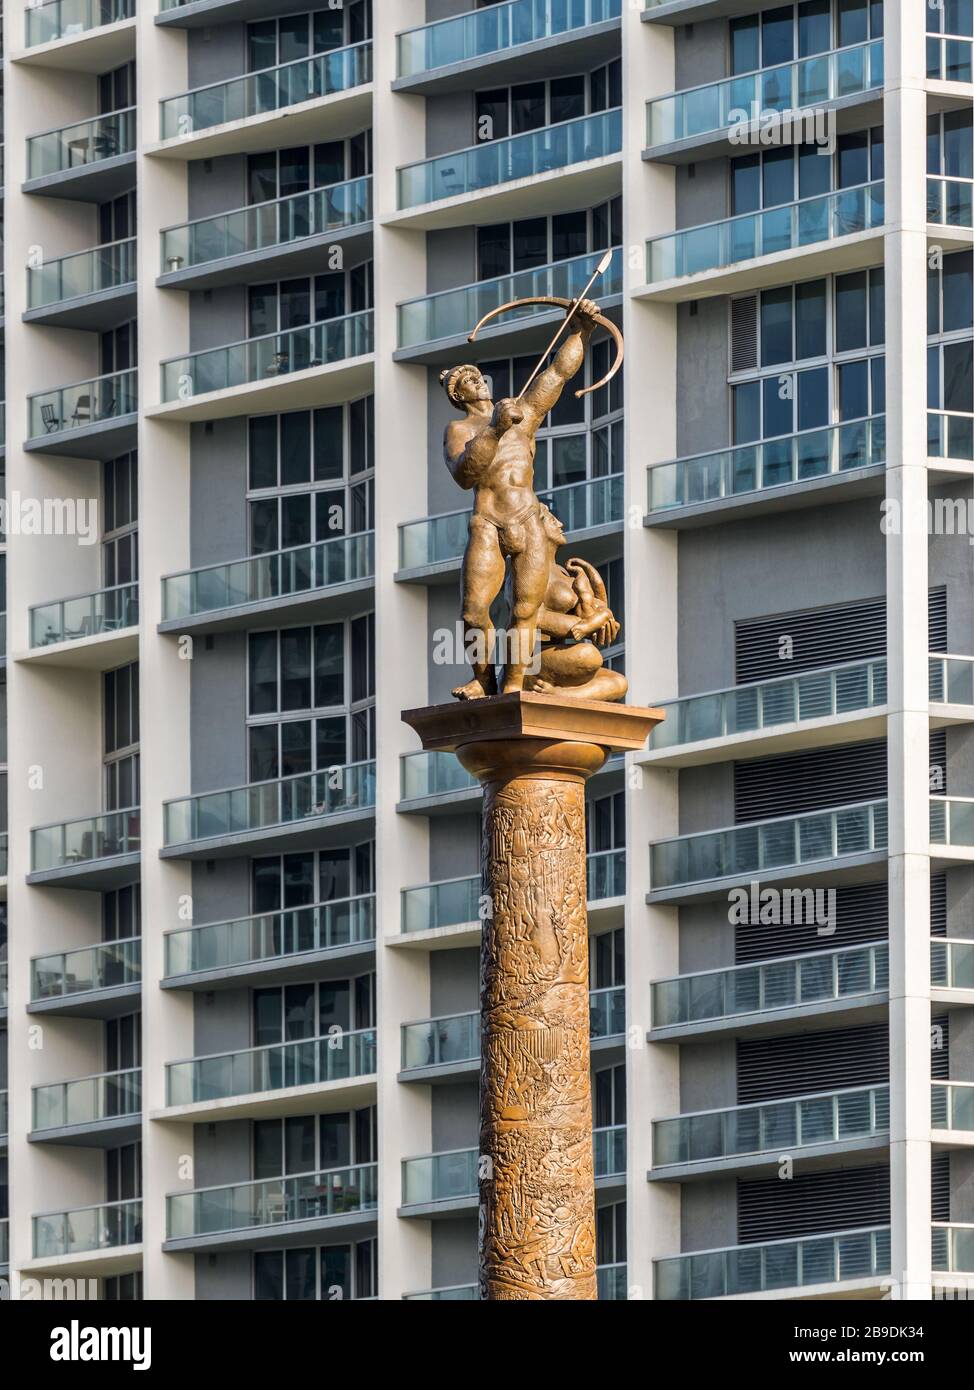 Miami, FL, États-Unis - 20 avril 2019 : les indiens Tequesta étaient les habitants d'origine de Miami. Une statue d'un couple indien gèle le Bricke Banque D'Images